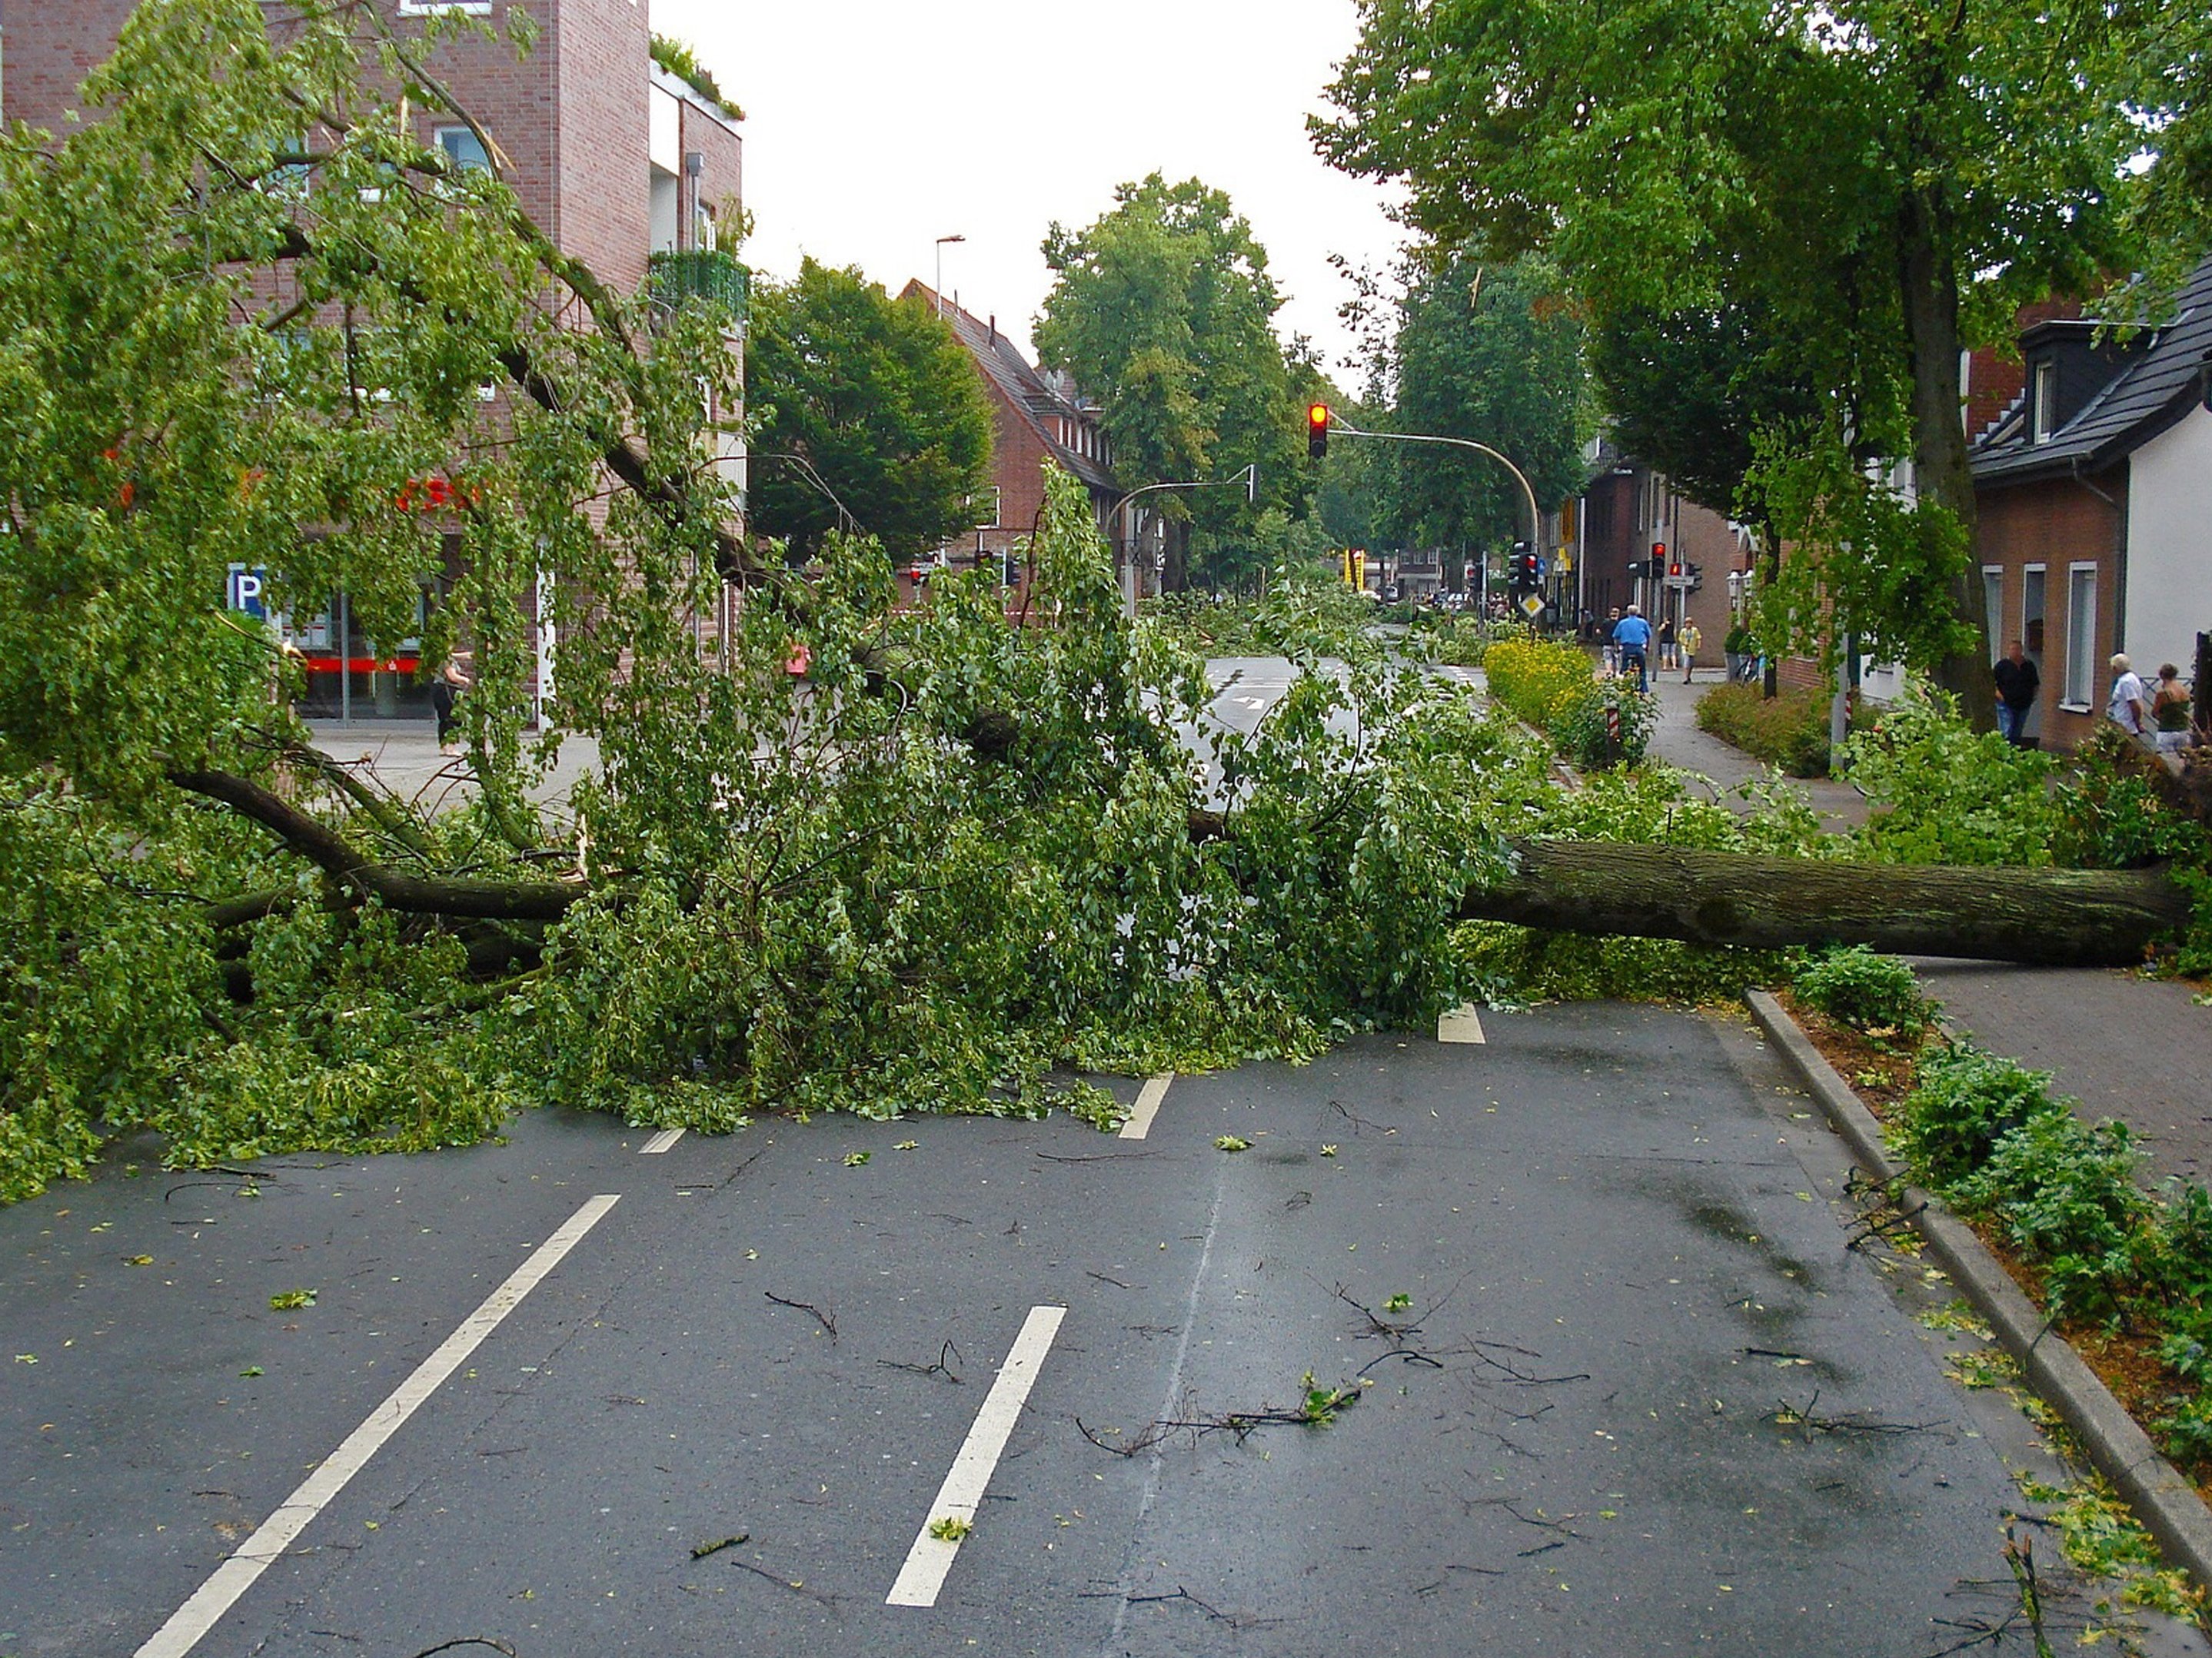 Sturmschaden Baum versperrt die Straße - Quelle: Pressestelle Landratsamt Ludwigsburg